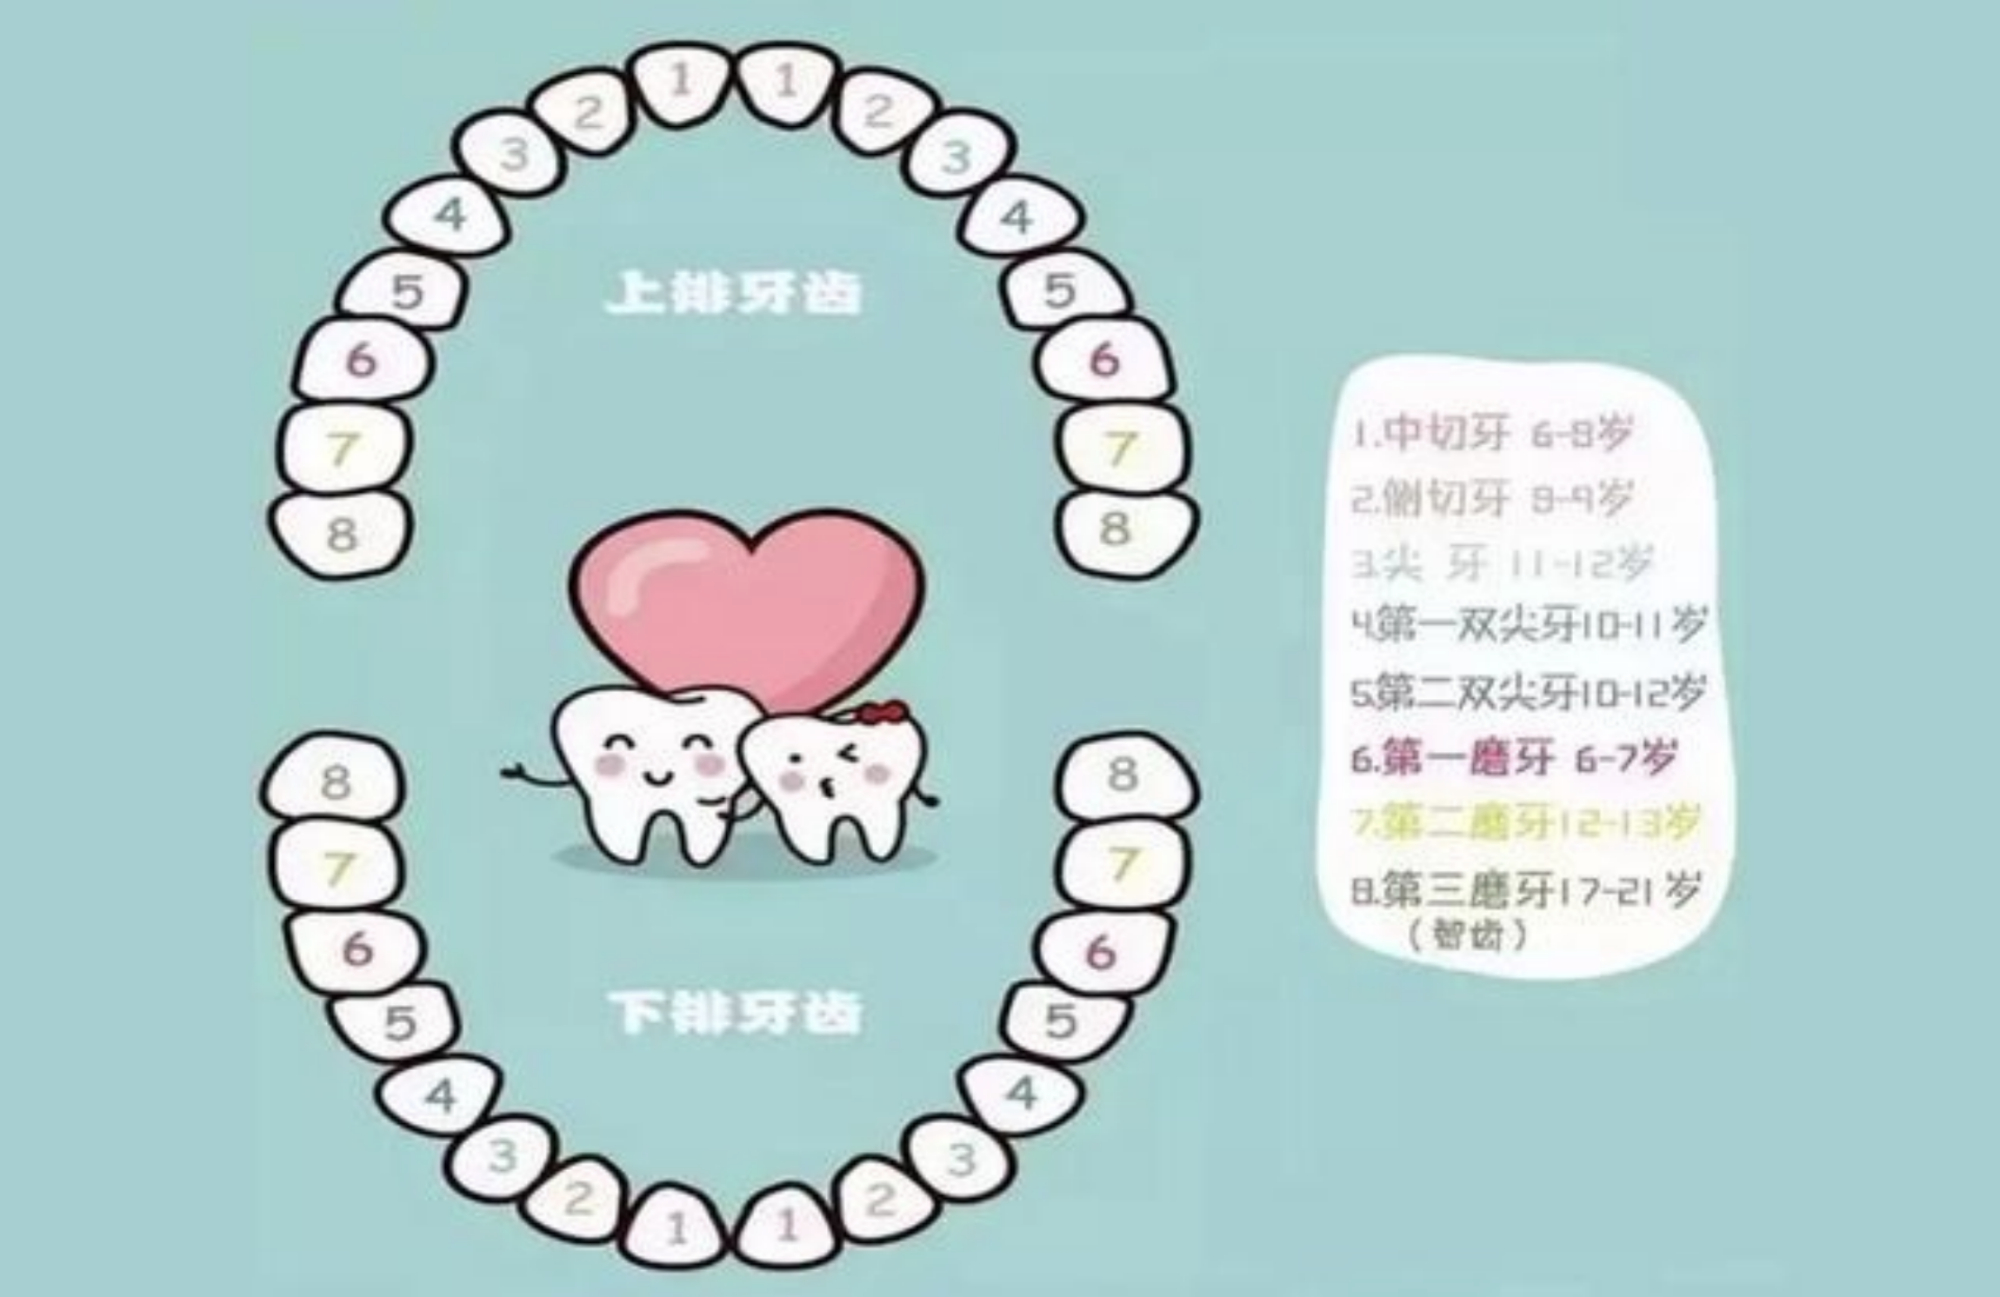 儿童换牙顺序图:孩子的乳牙几岁换?该怎么护理?一文说清